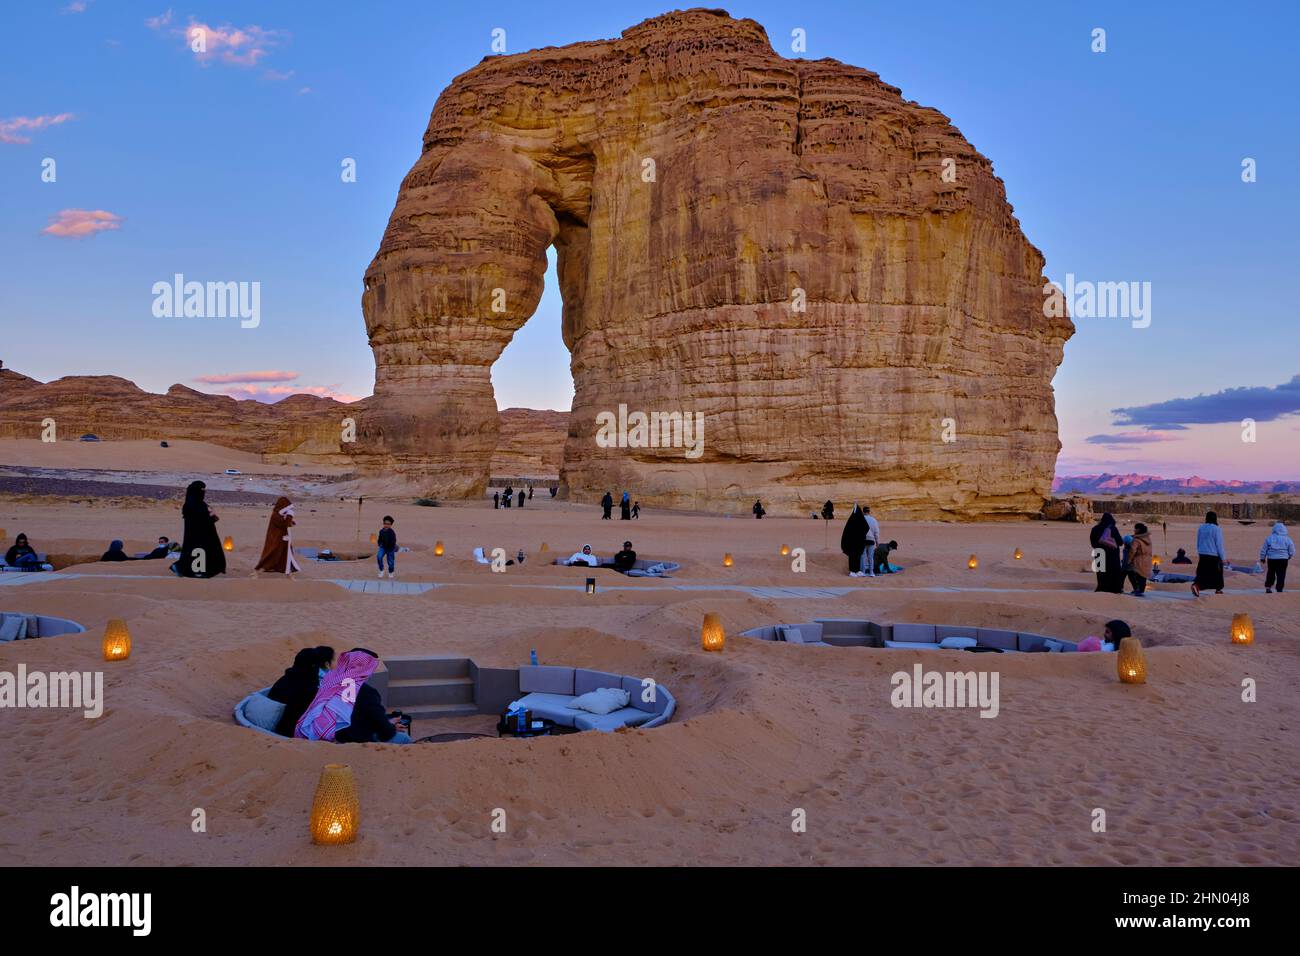 Saudi Arabia, Al Madinah Region, AlUla or Al Ula, Elephant rock, touristical site Stock Photo